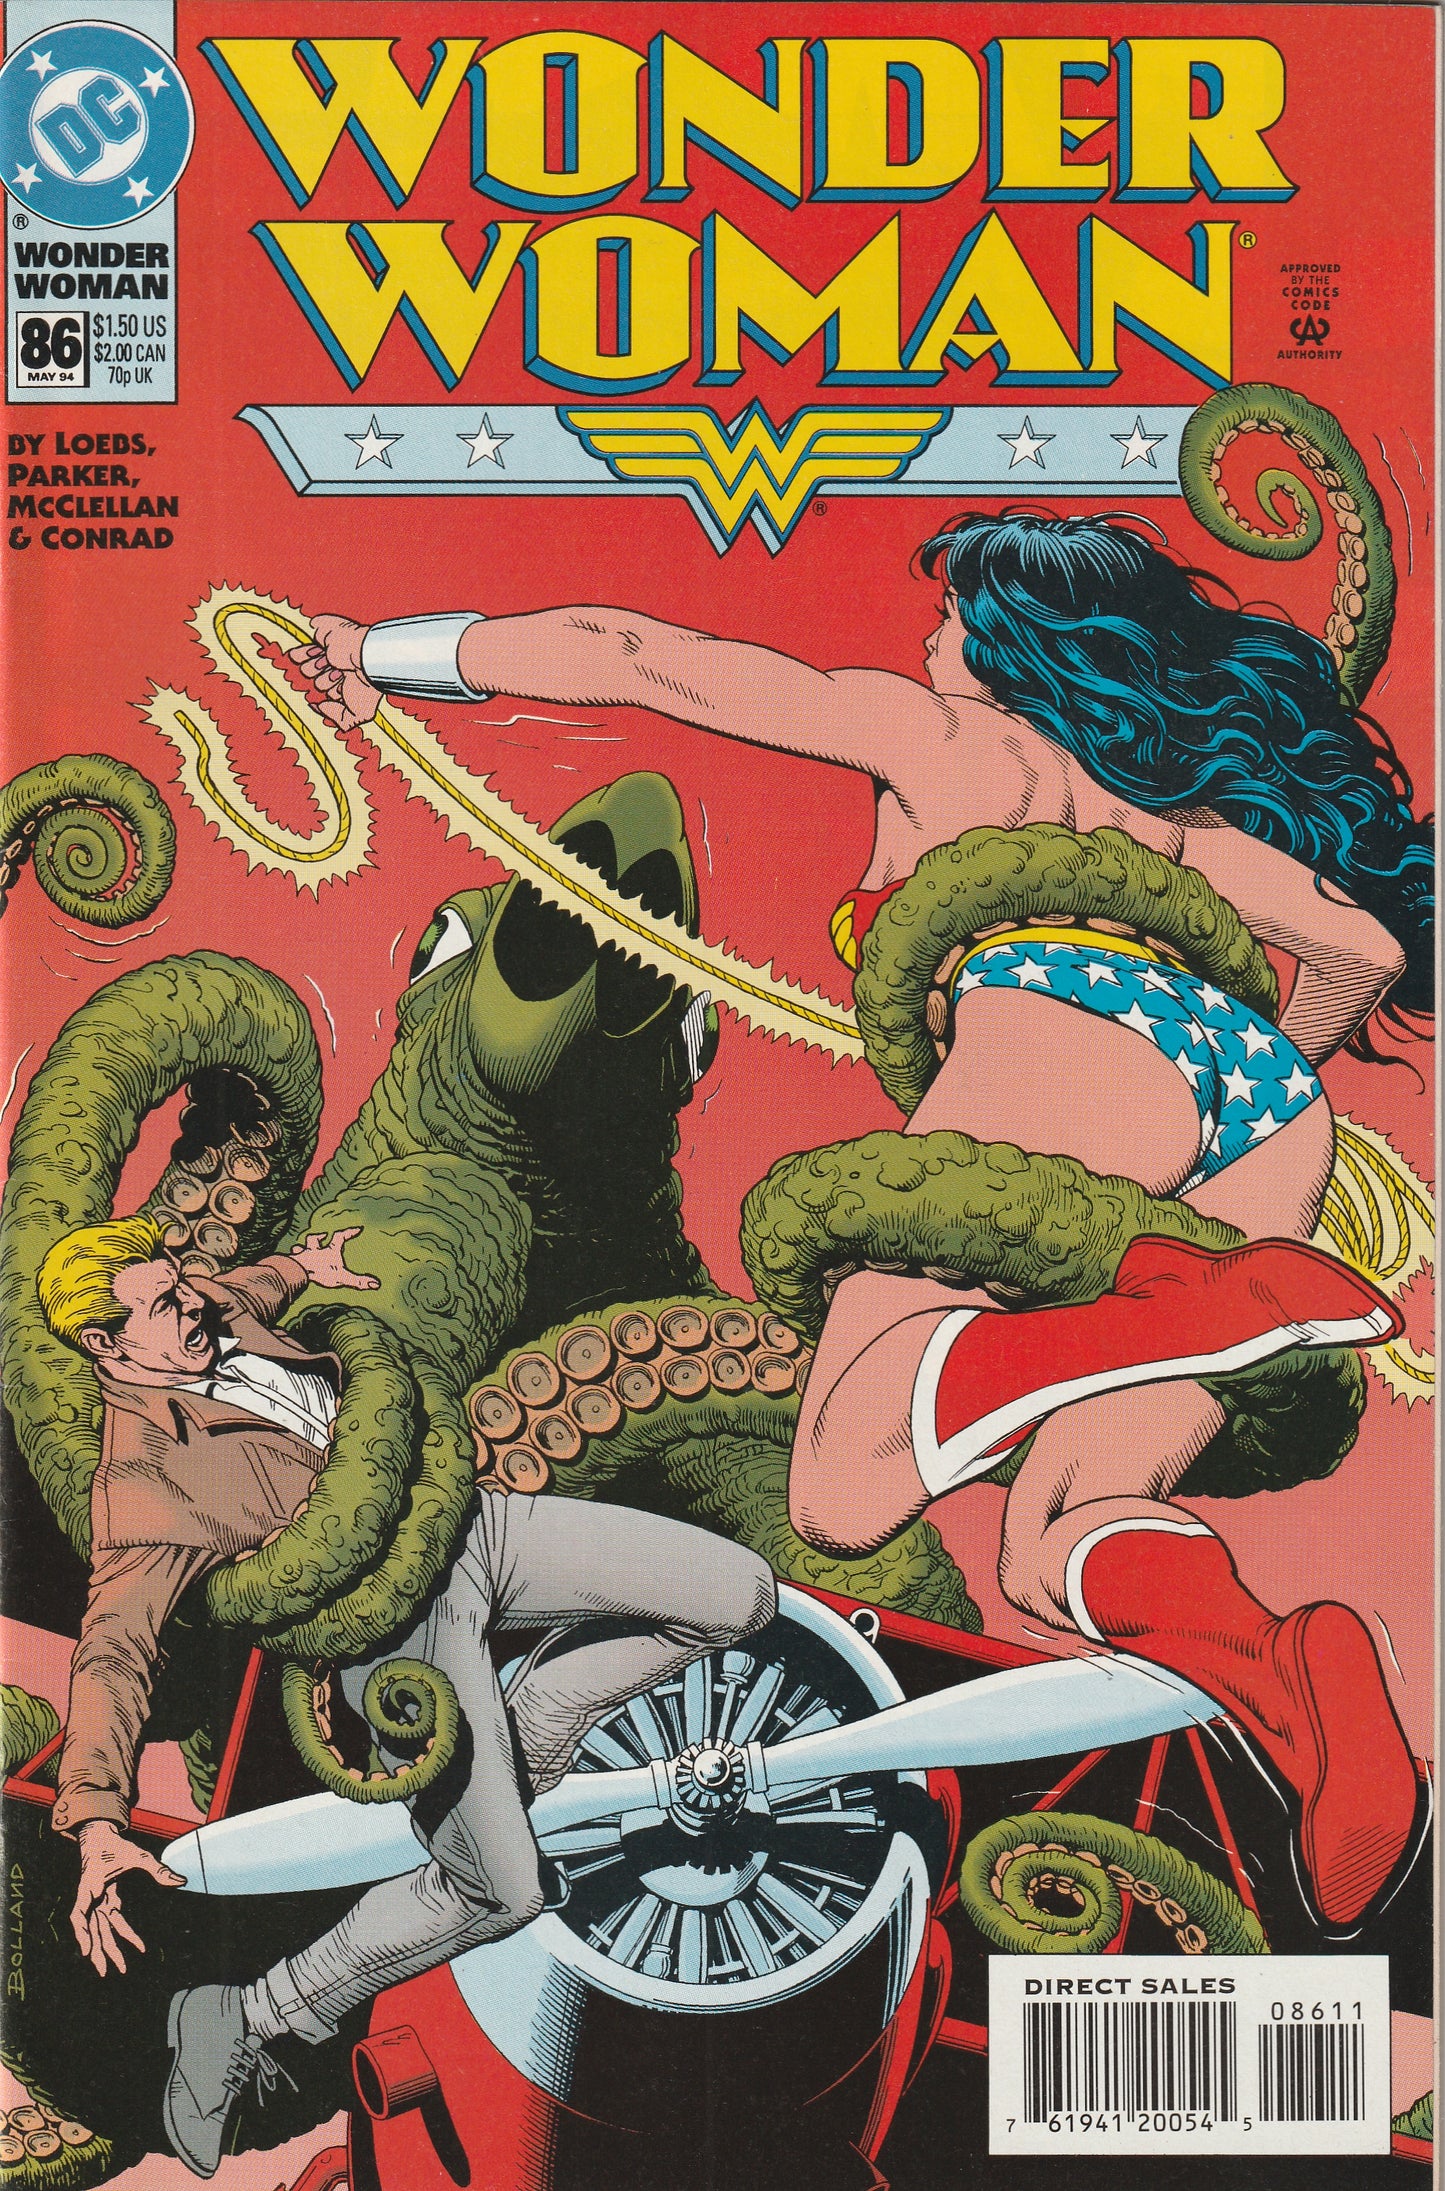 Wonder Woman #86 (1994)